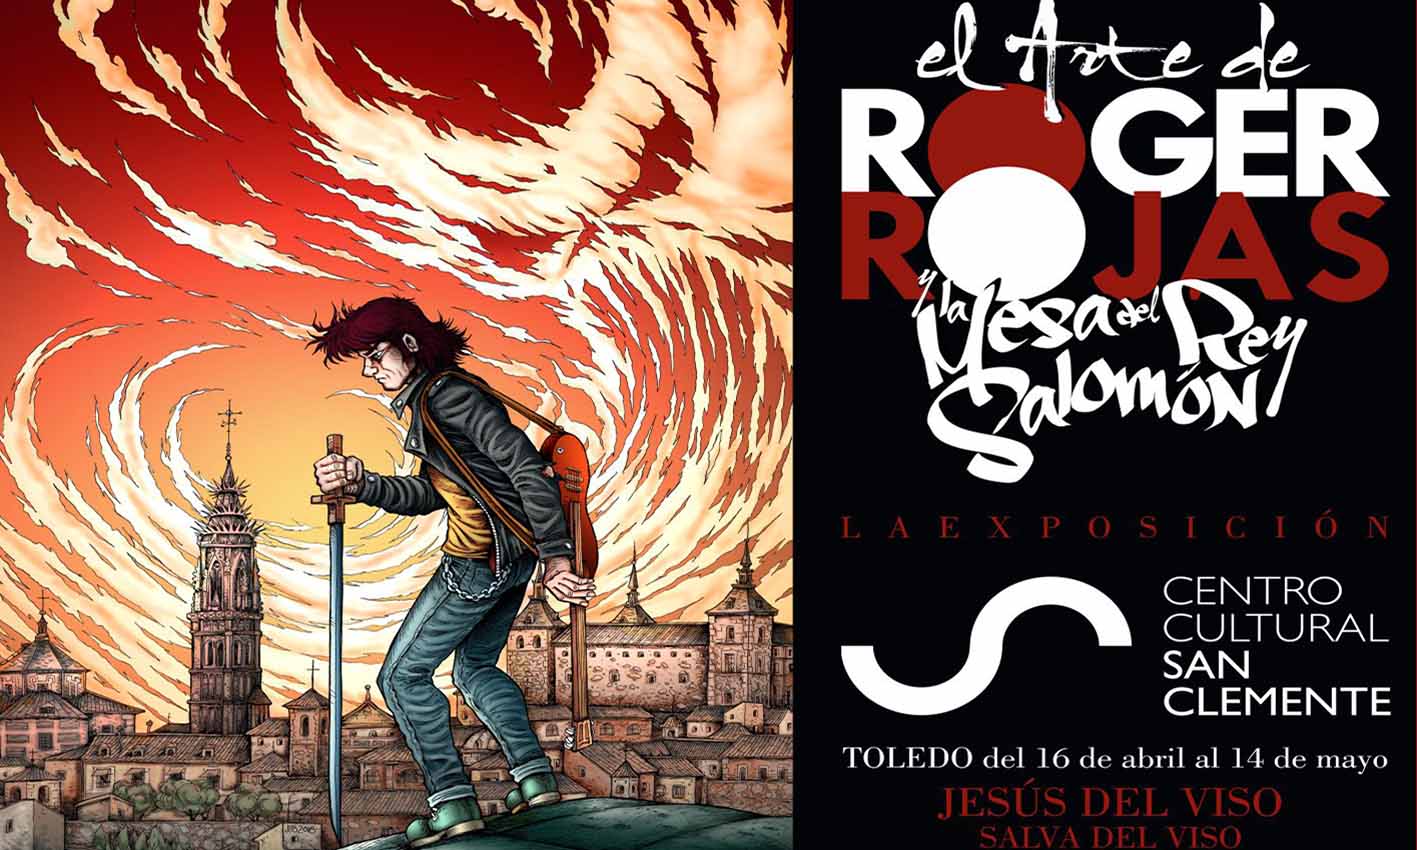 Invitación a la exposición de Roger Rojas